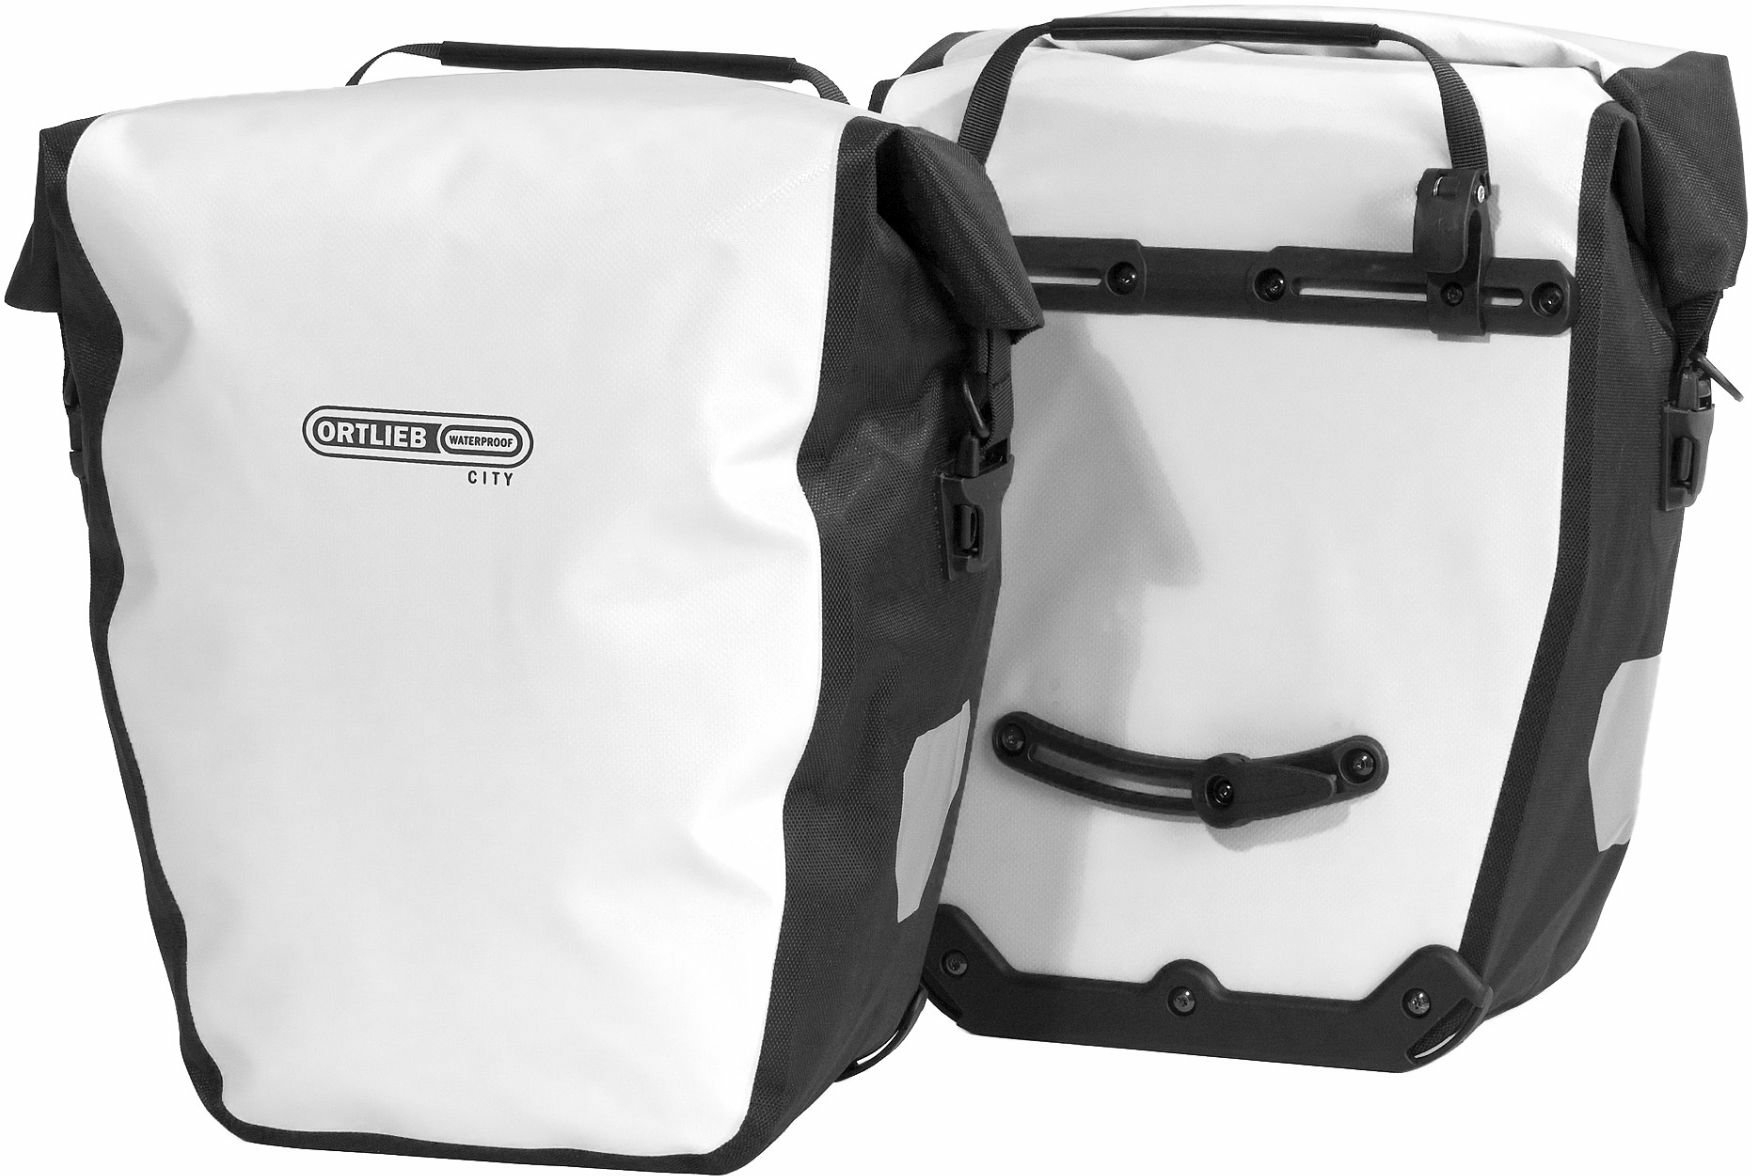 ORTLIEB Seitentaschen Paar Back-Roller City (2x)20 Liter white - black